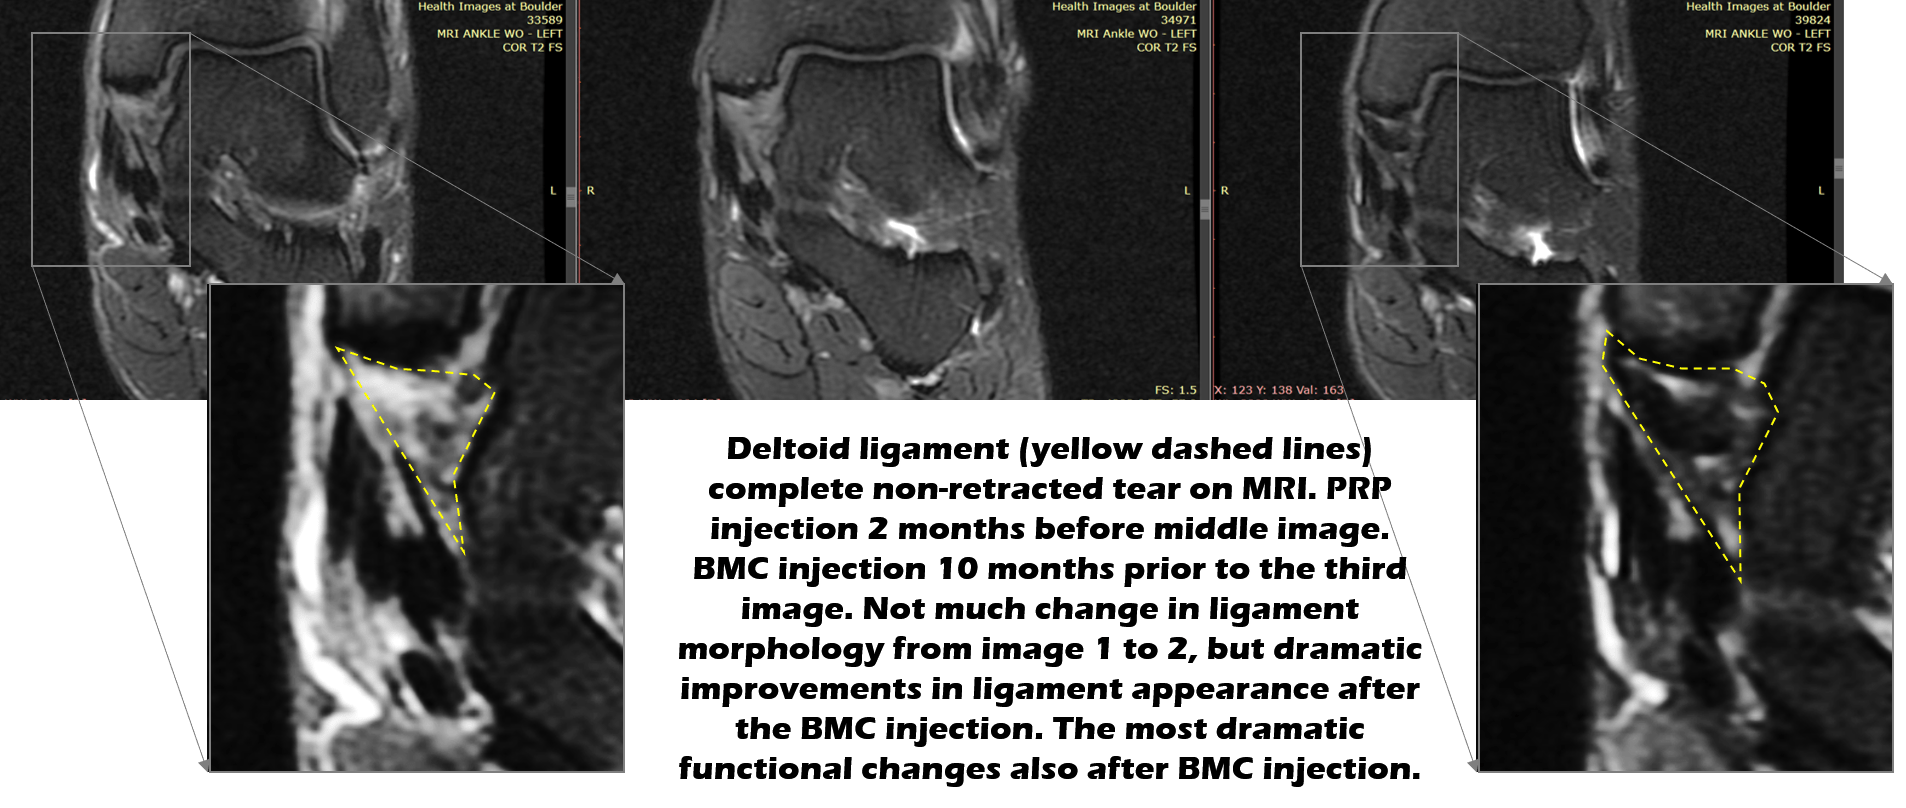 deltoid ligament injury